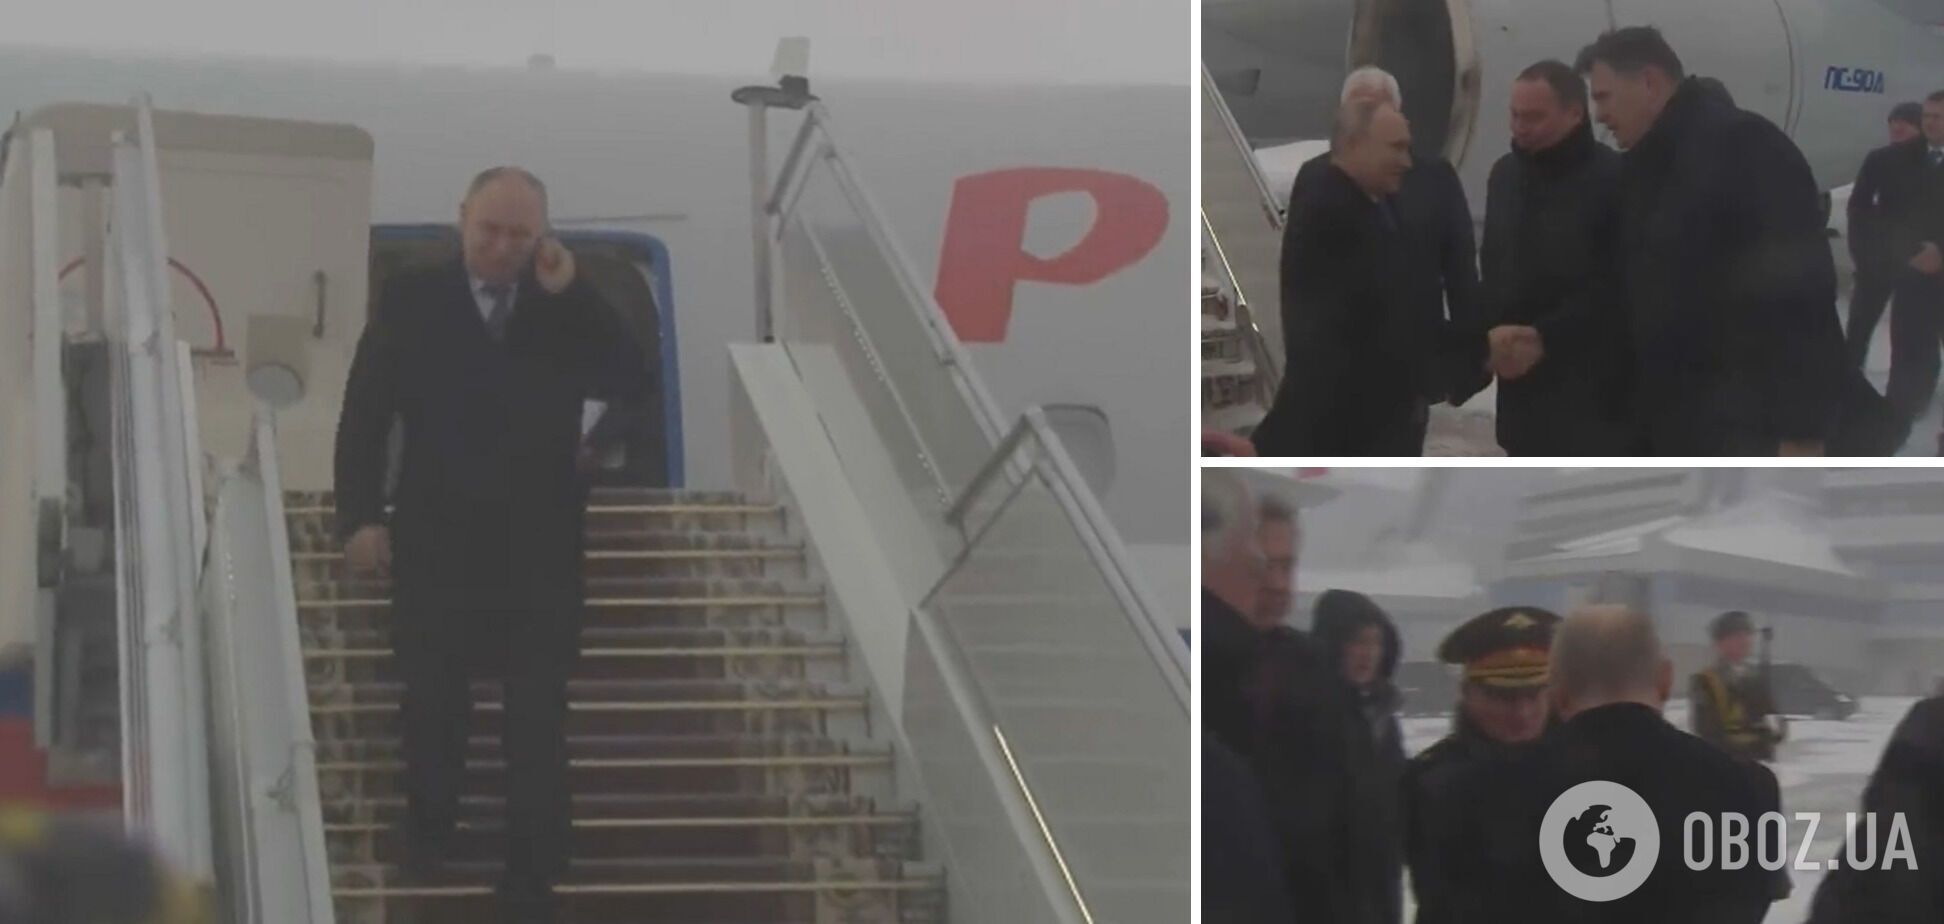 Ні 'особливої' валізи, ні дистанції: мережу здивували кадри візиту Путіна в Мінськ на саміт ОДКБ. Відео 